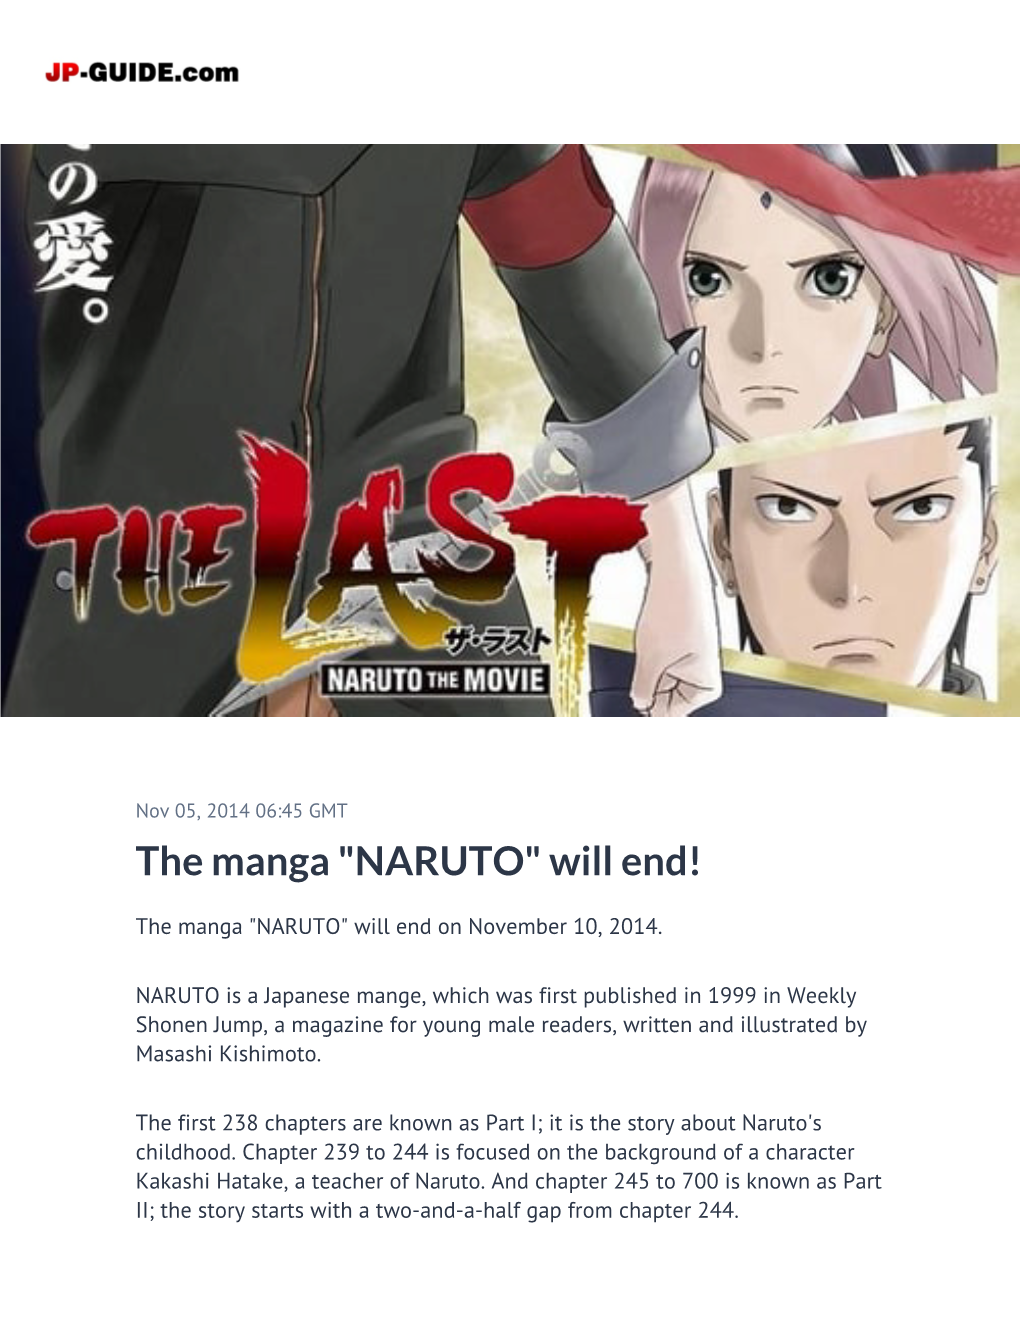 The Manga "NARUTO" Will End!